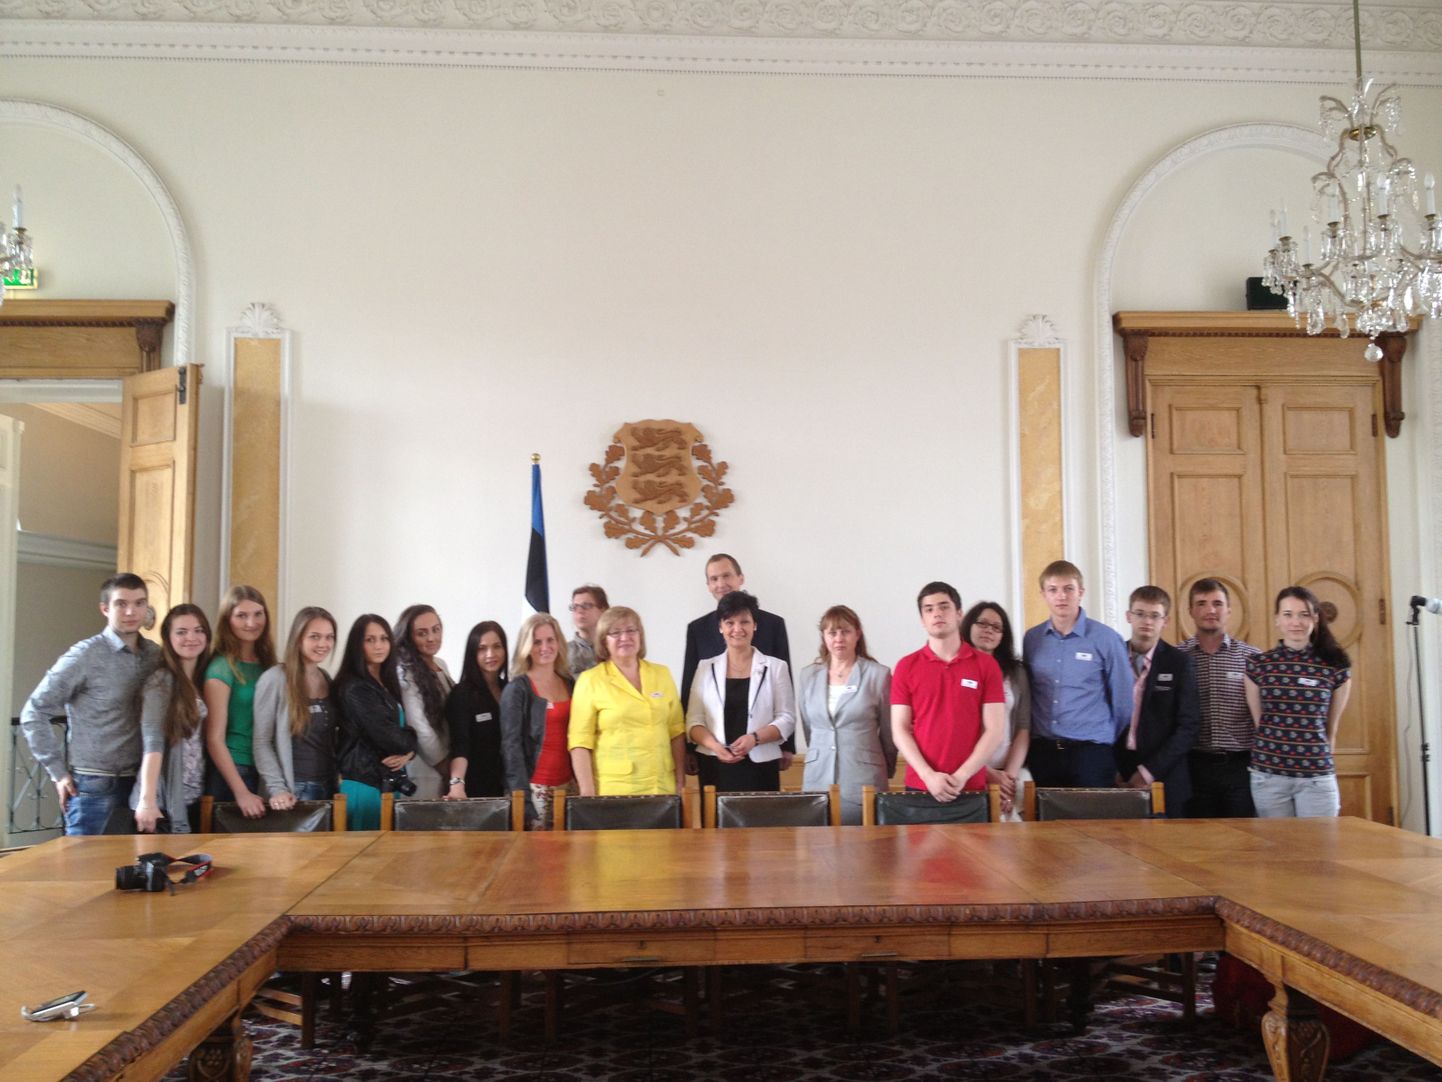 Лайне Рандъярв встретилась со студентами Санкт-Петербургского государственного экономического университета.